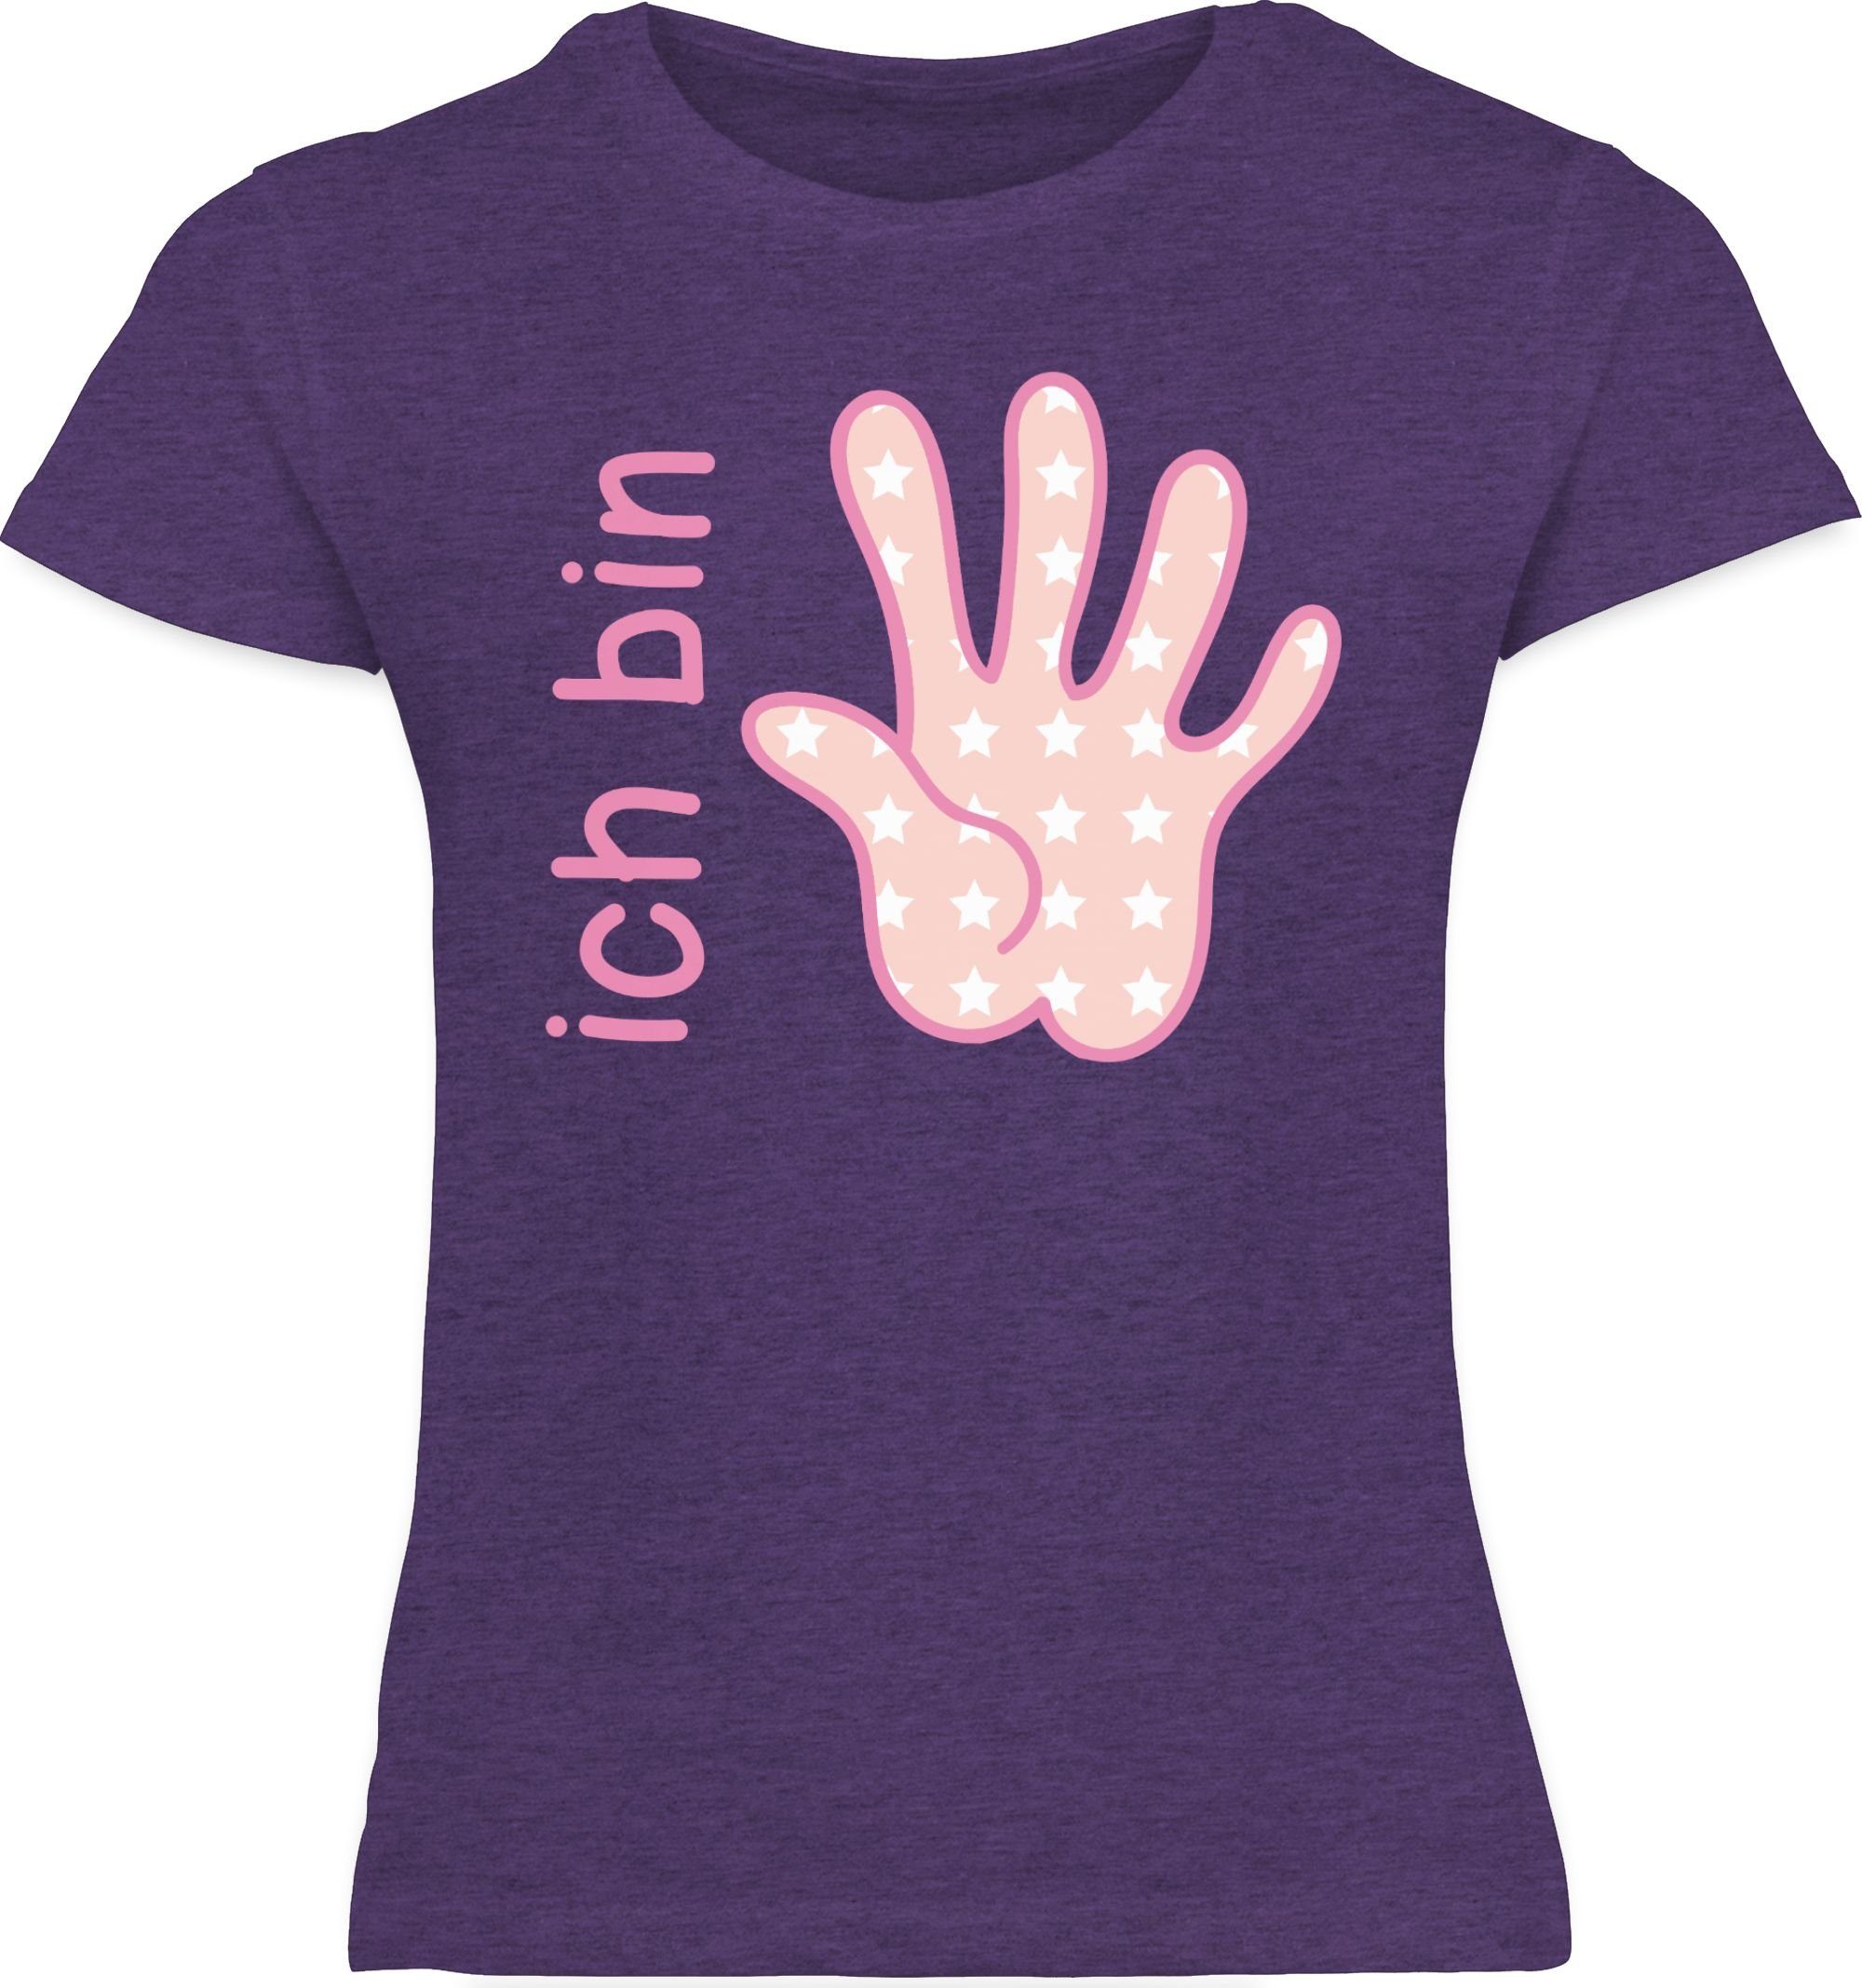 bin 5. rosa Zeichensprache Ich 2 Meliert Shirtracer fünf Lila T-Shirt Geburtstag